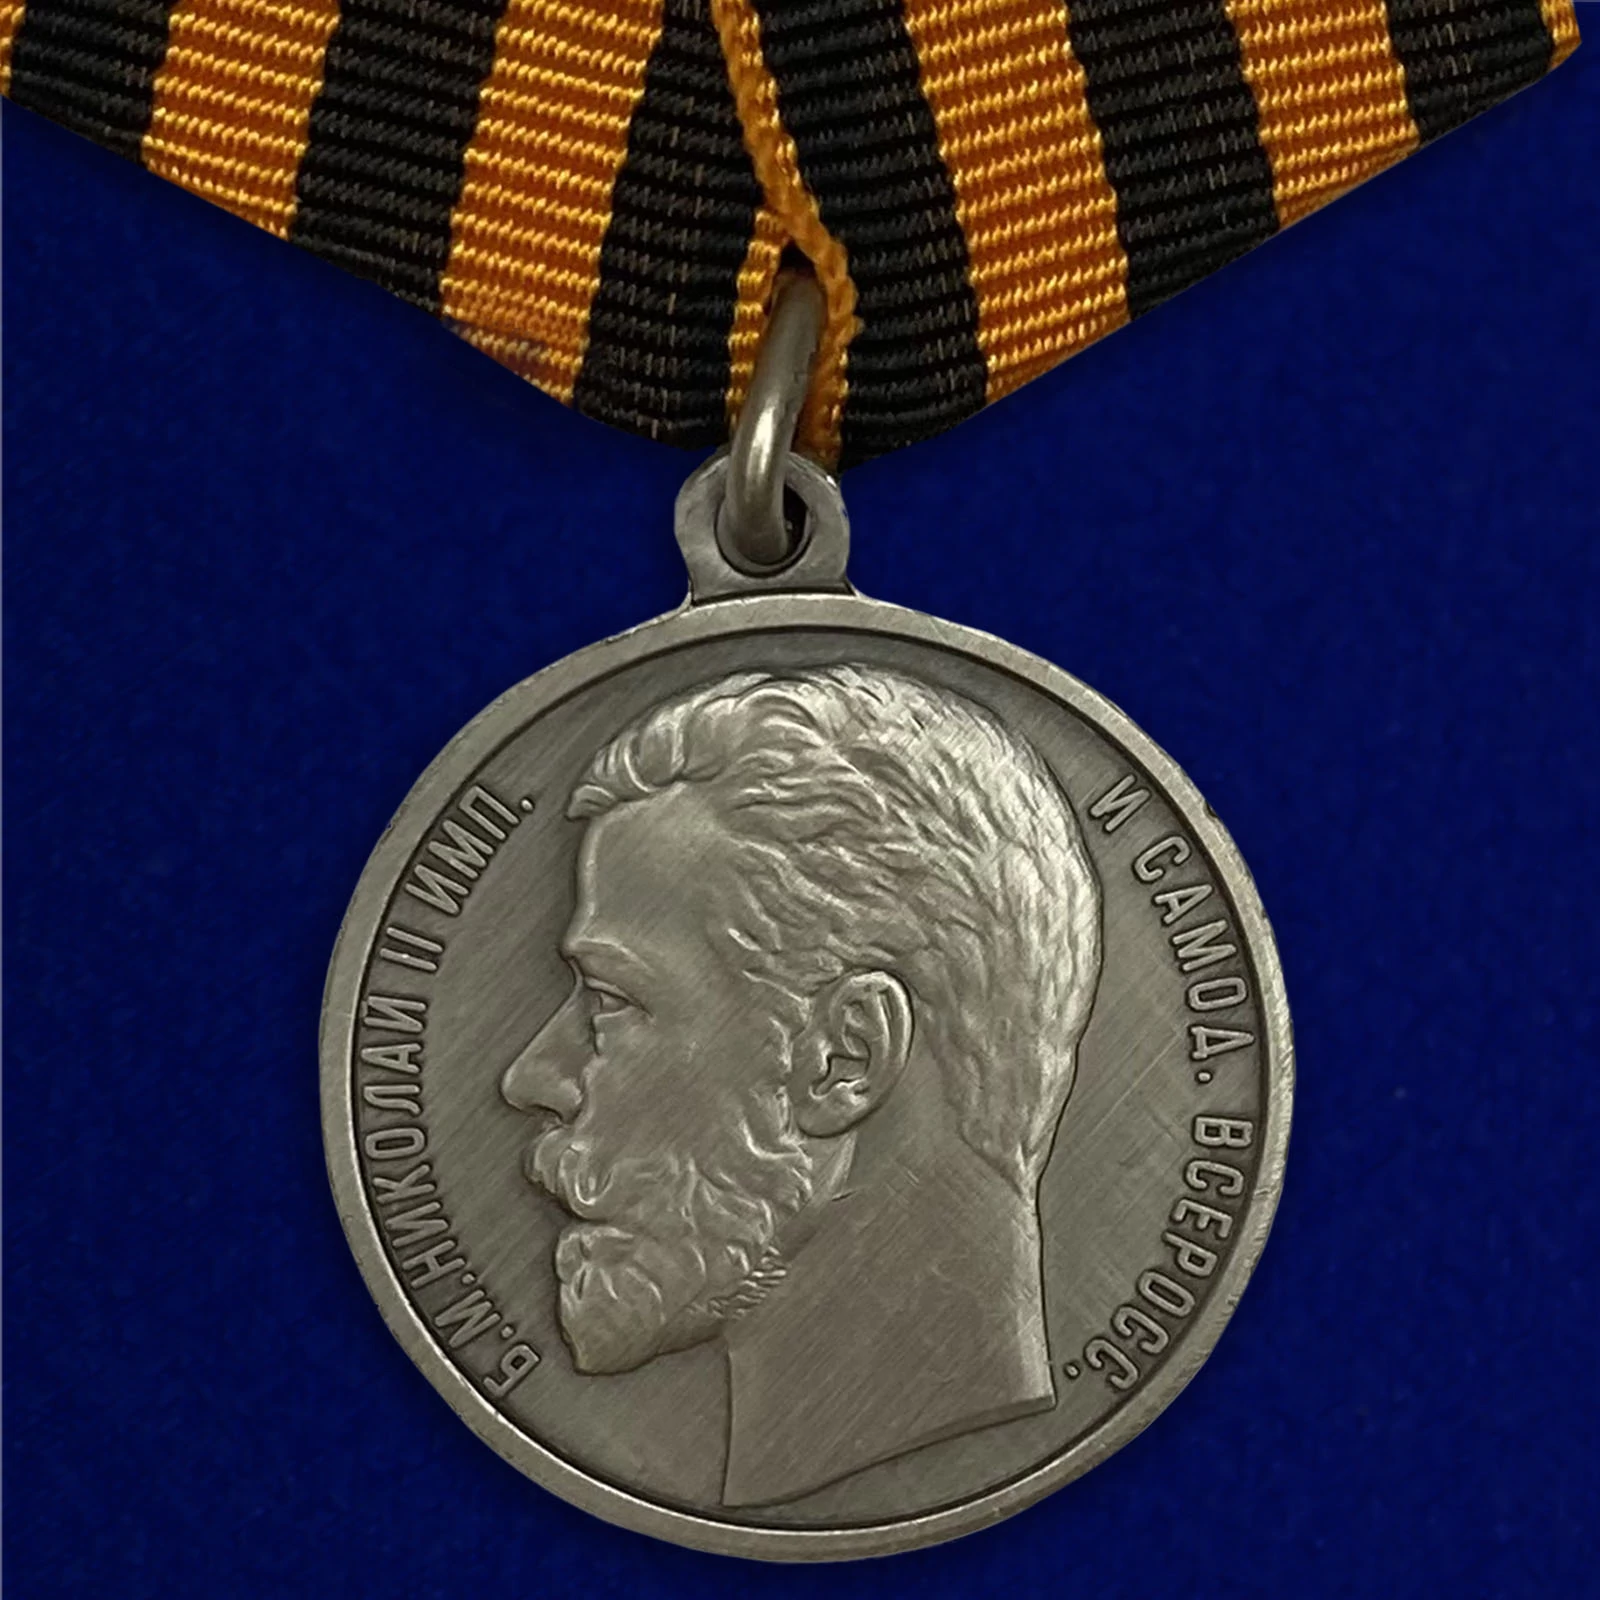 Сувенирная медаль Георгиевская «За храбрость» 4 степени (Николай 2)